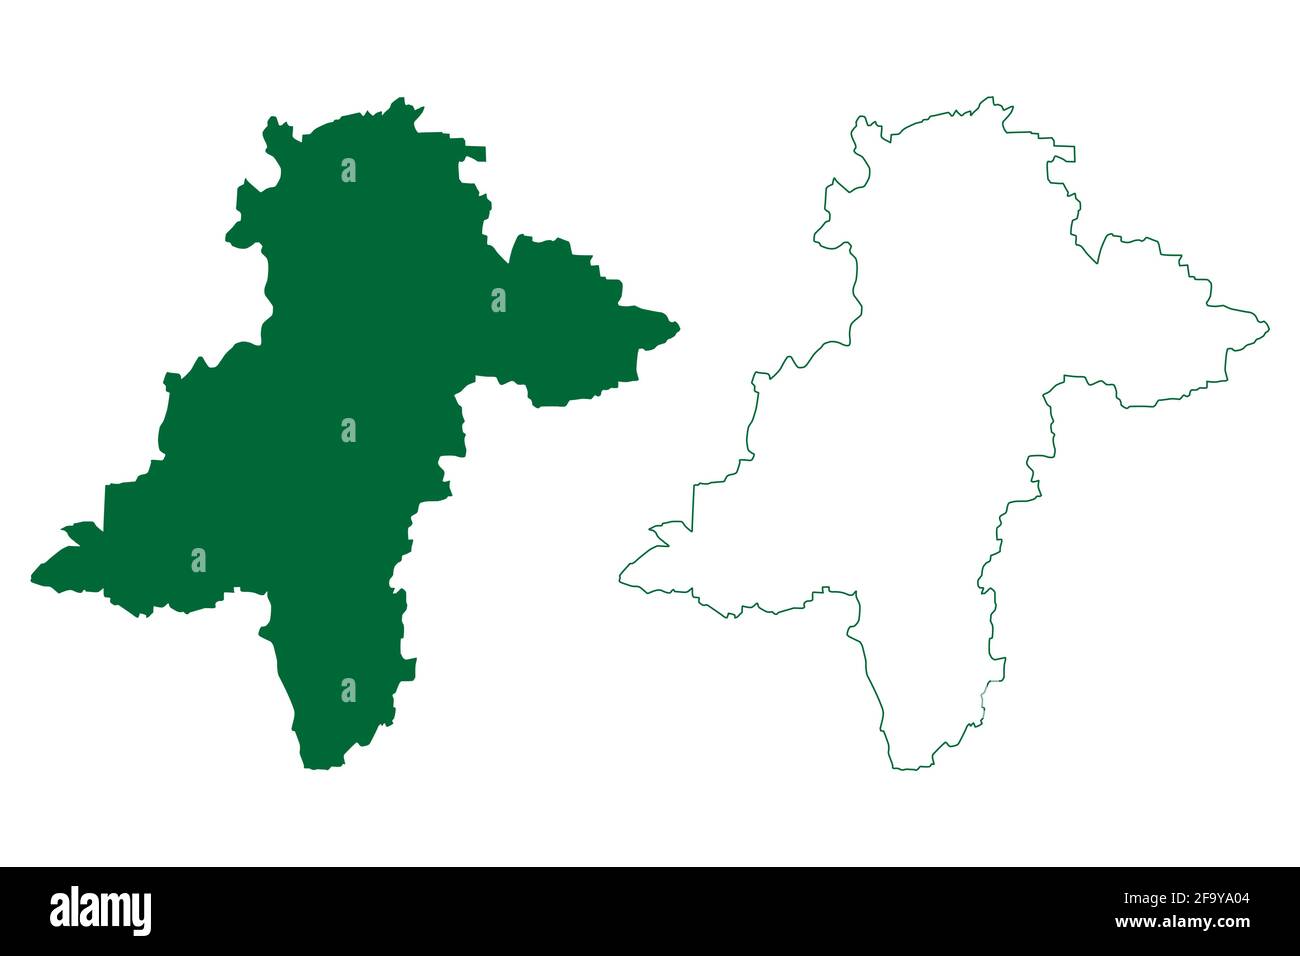 Distretto di Davanagere (Stato di Karnataka, Repubblica dell'India, divisione di Bangalore) illustrazione vettoriale della mappa, schizzo della mappa di Davanagere Illustrazione Vettoriale